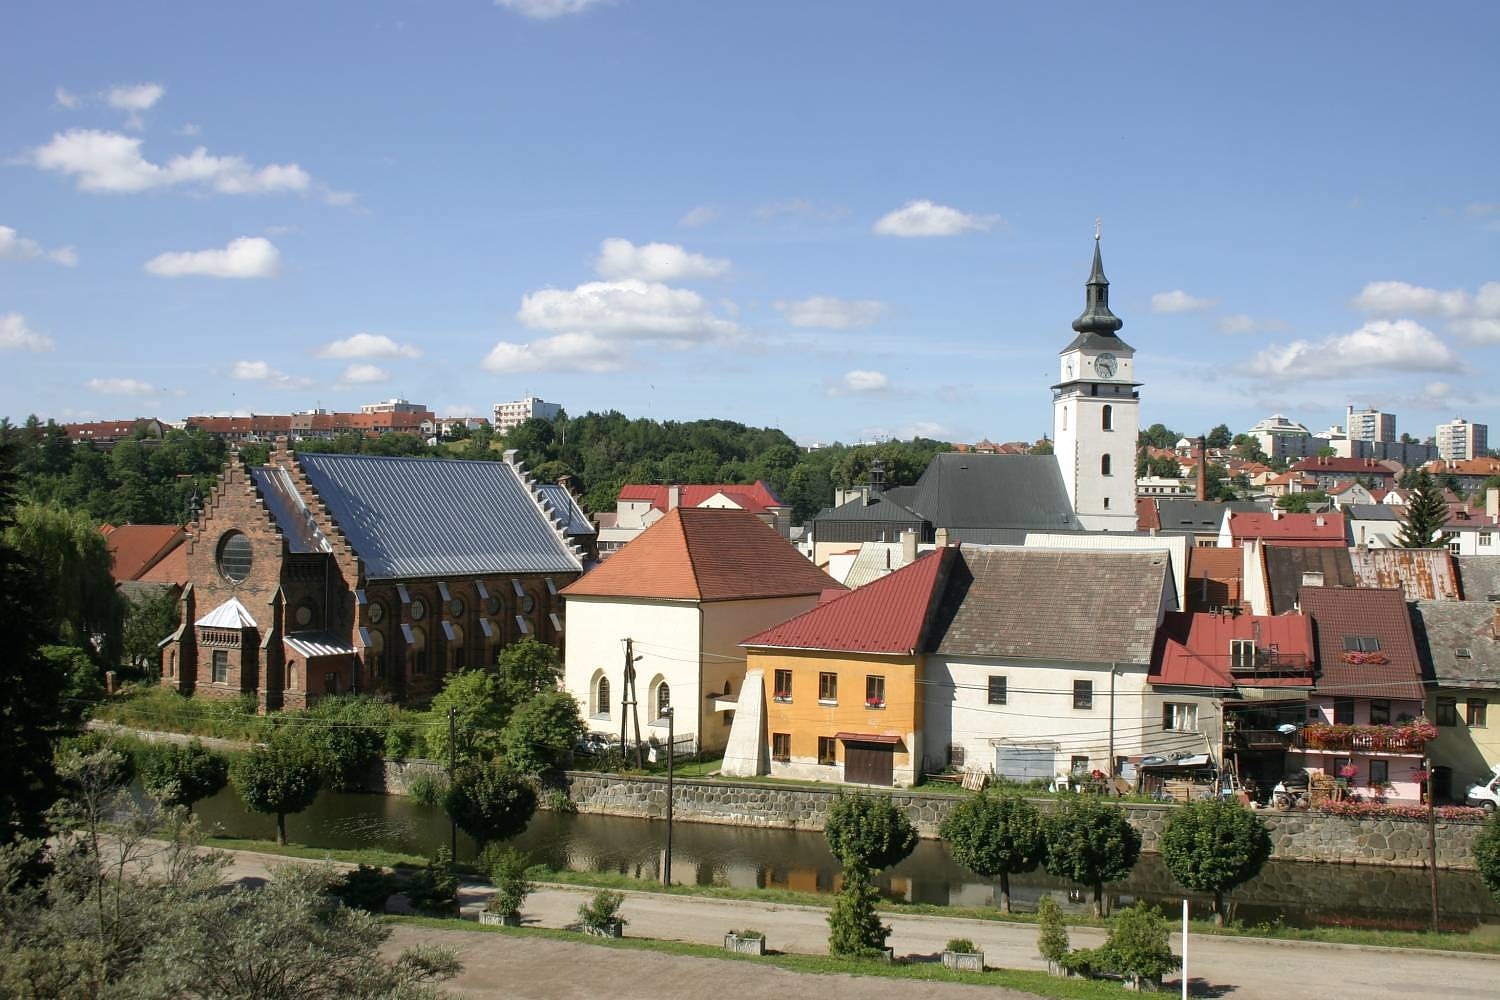 Velké Meziříčí, Czech Republic